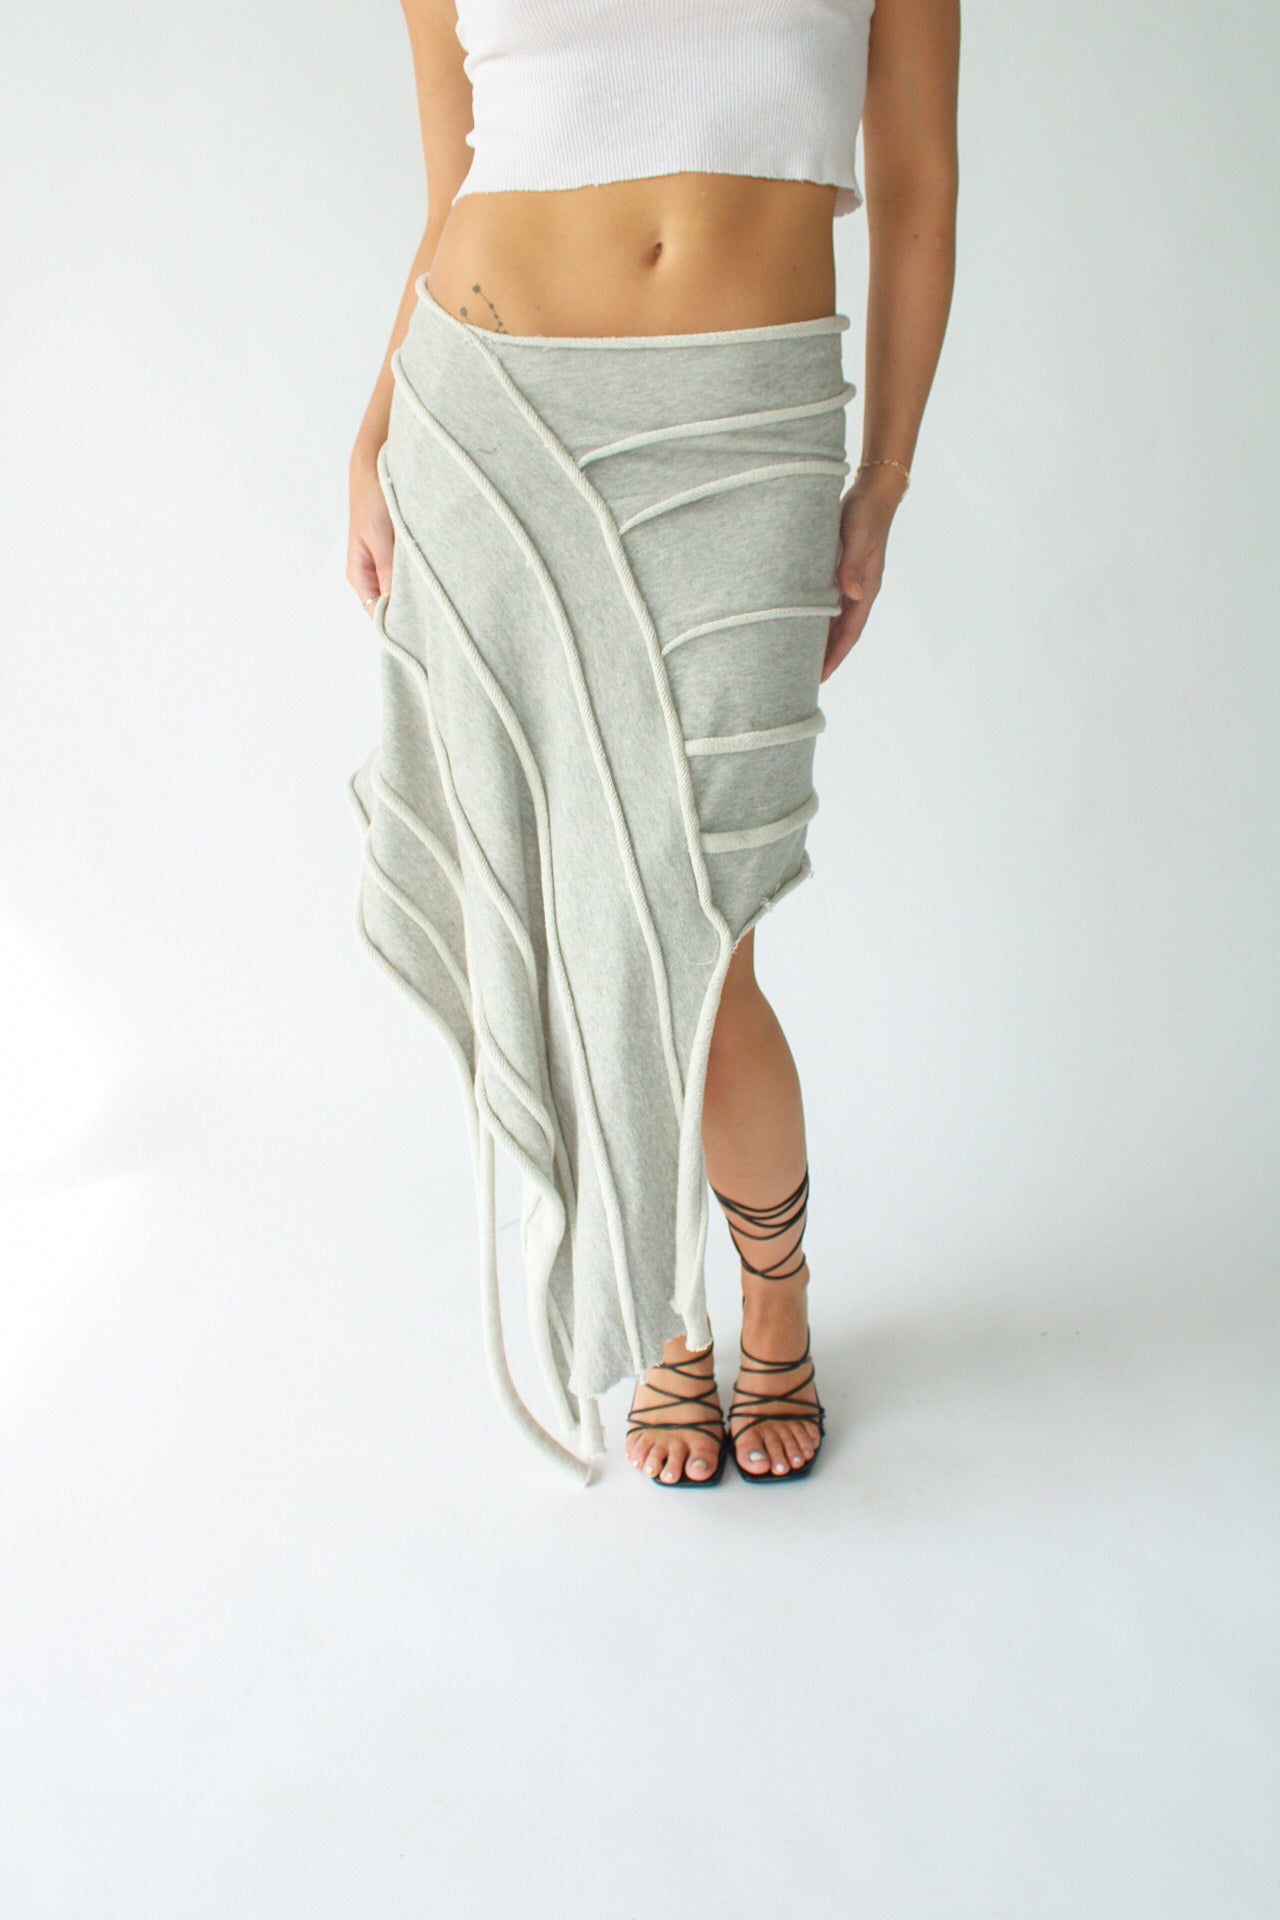 Textured Knit Skirt